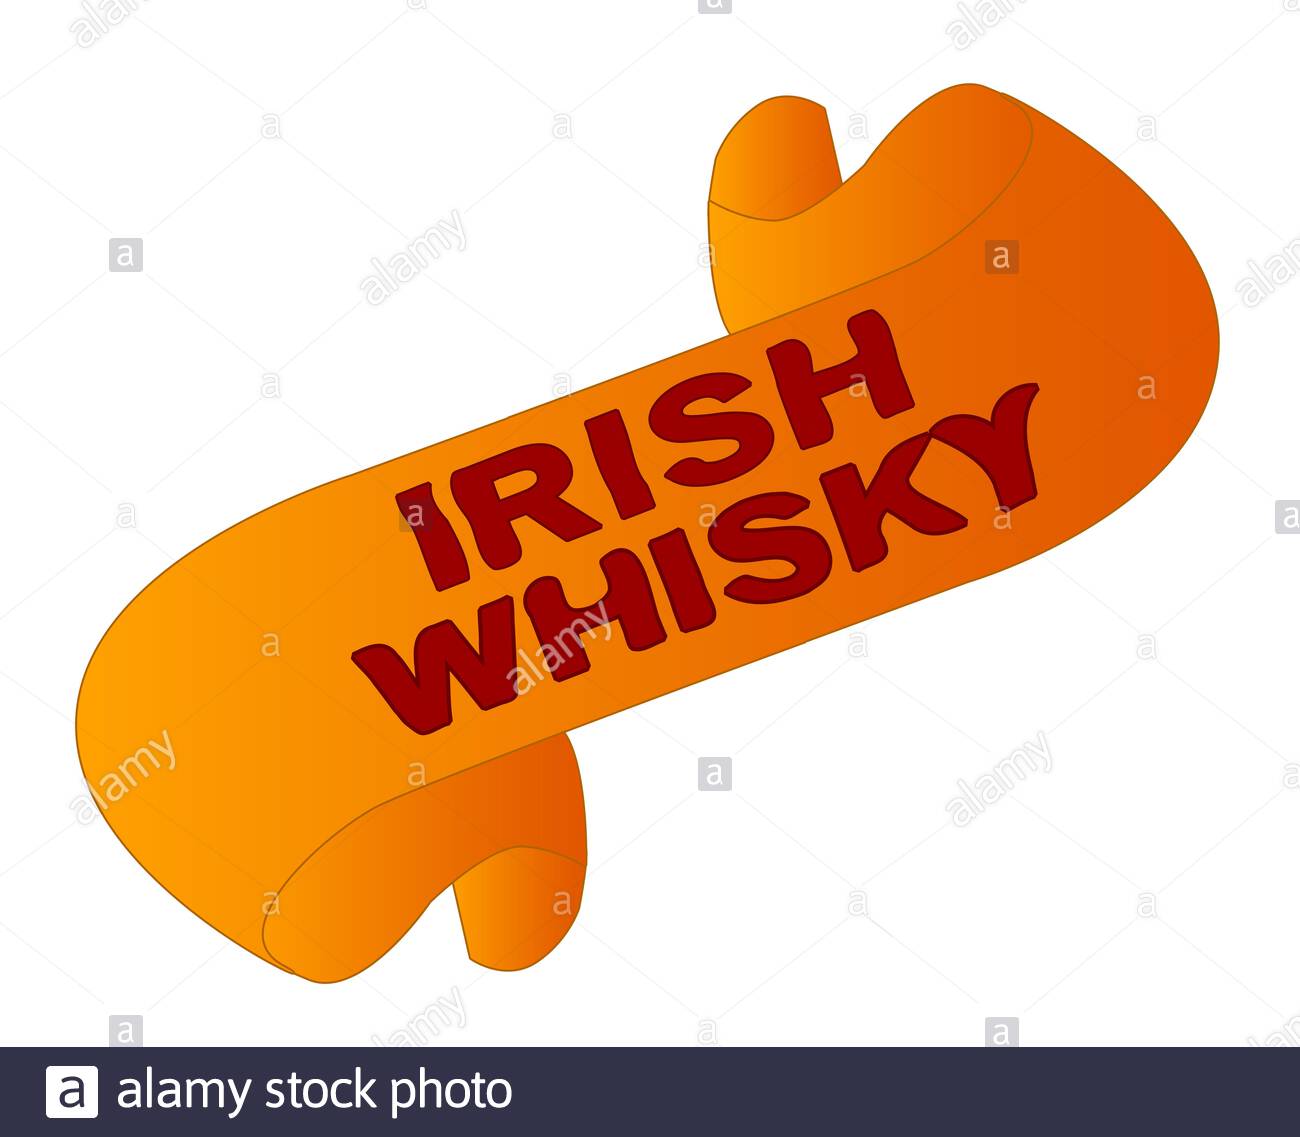 Brand: Irish